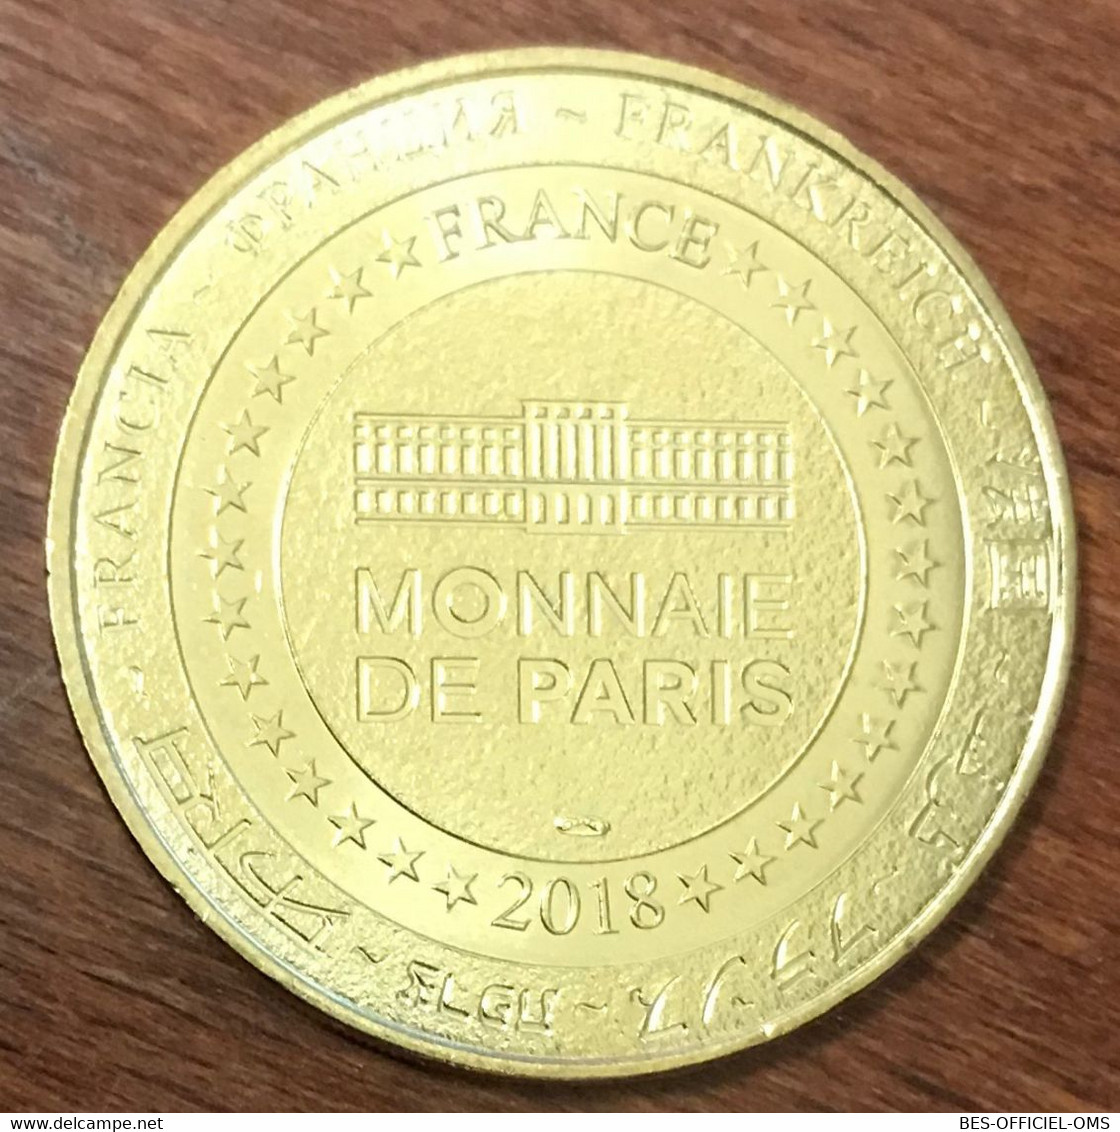 17 LA ROCHELLE AQUARIUM LA MÉDUSE AURELIE MDP 2018 MEDAILLE MONNAIE DE PARIS JETON TOURISTIQUE MEDALS COINS TOKENS - 2018